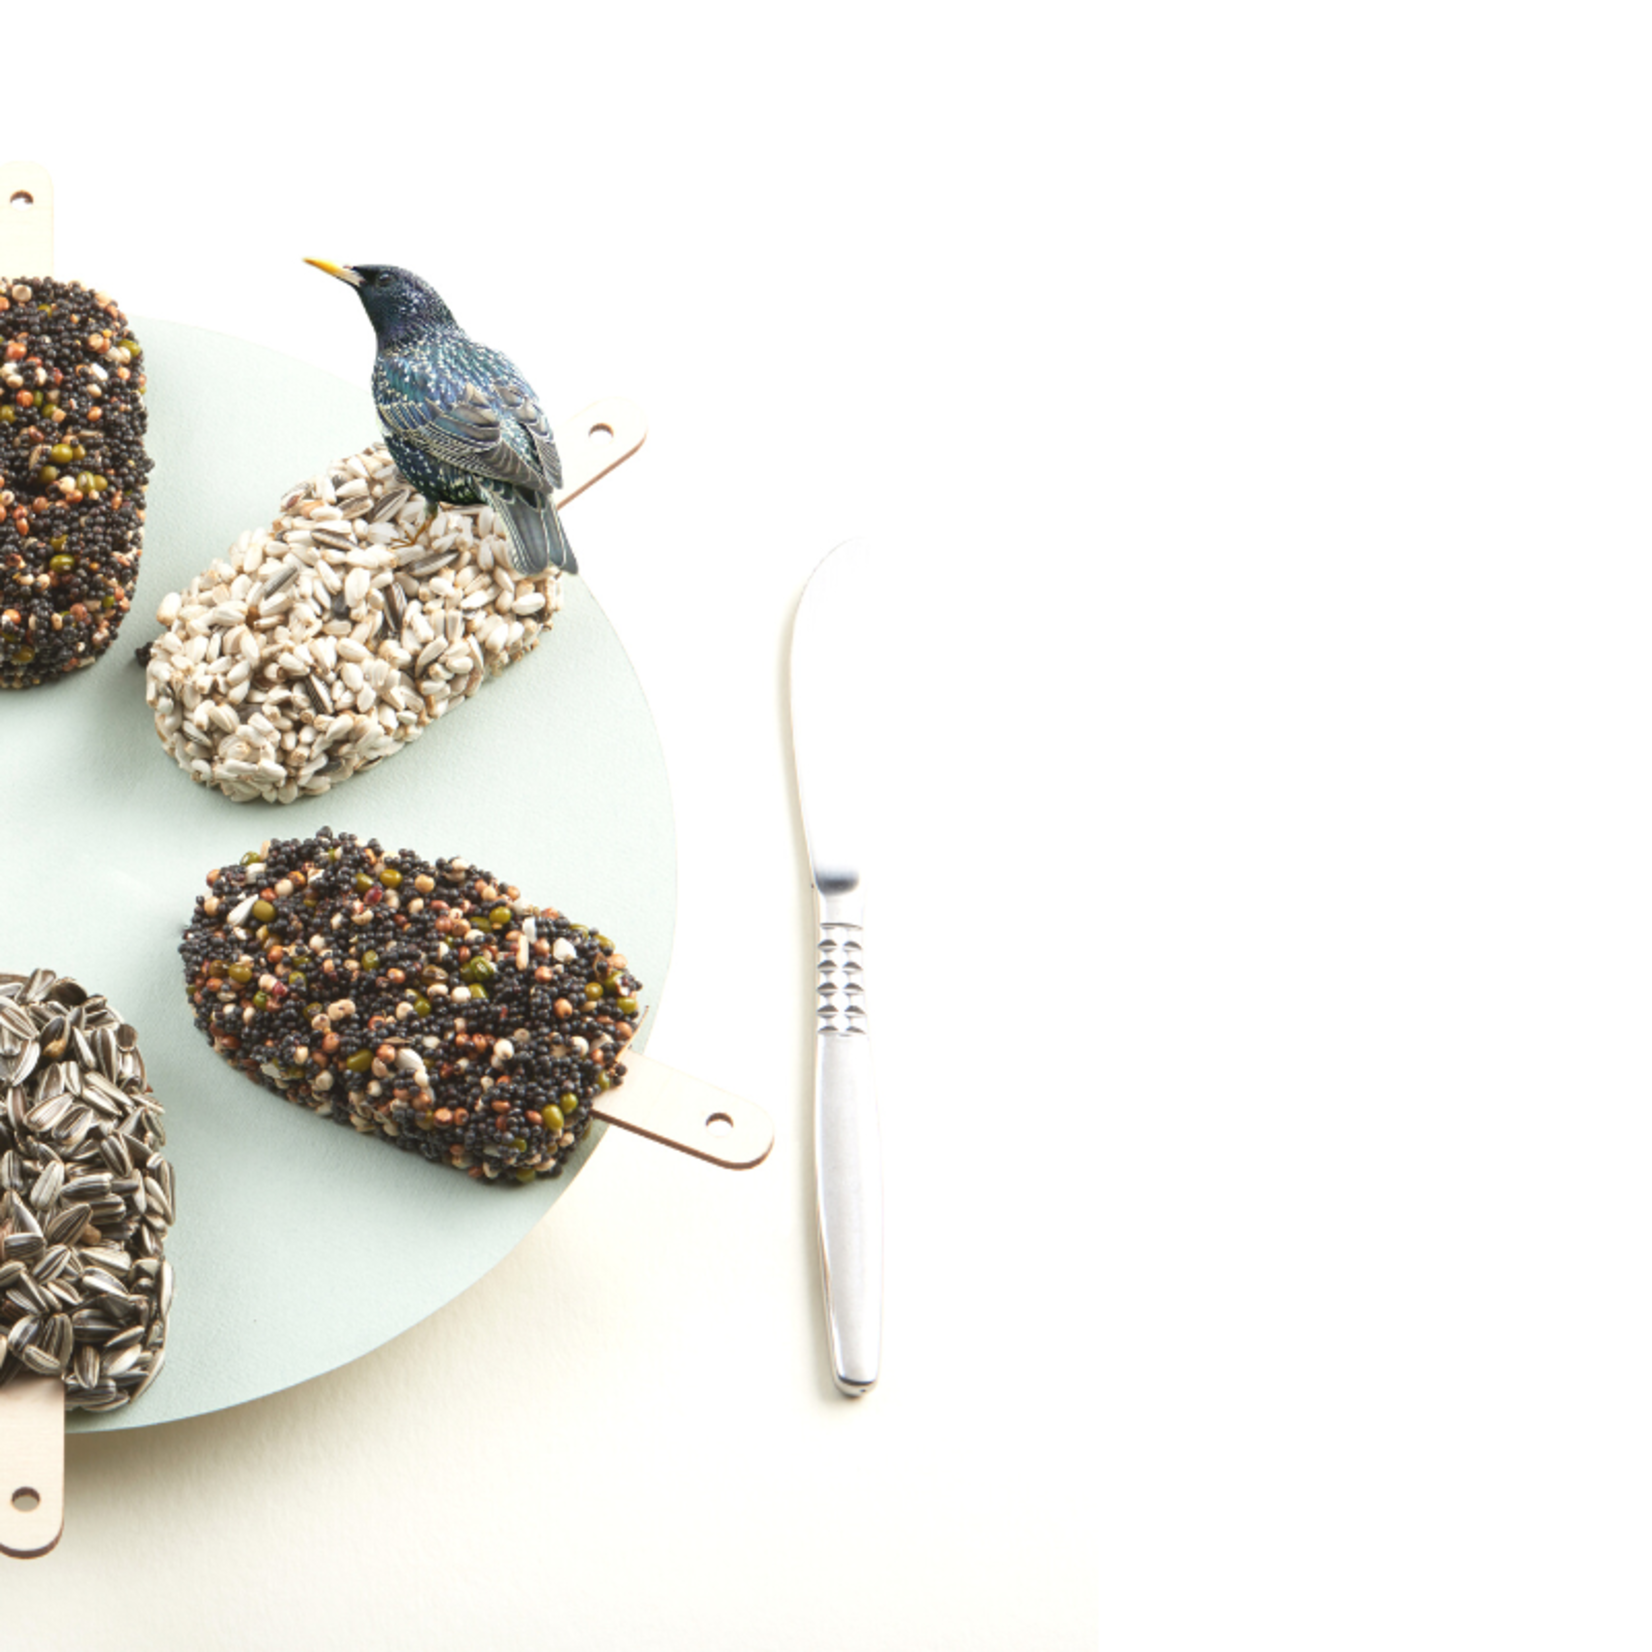 Woodpecker Seed Cake Case 8+1 | The Bird House NY